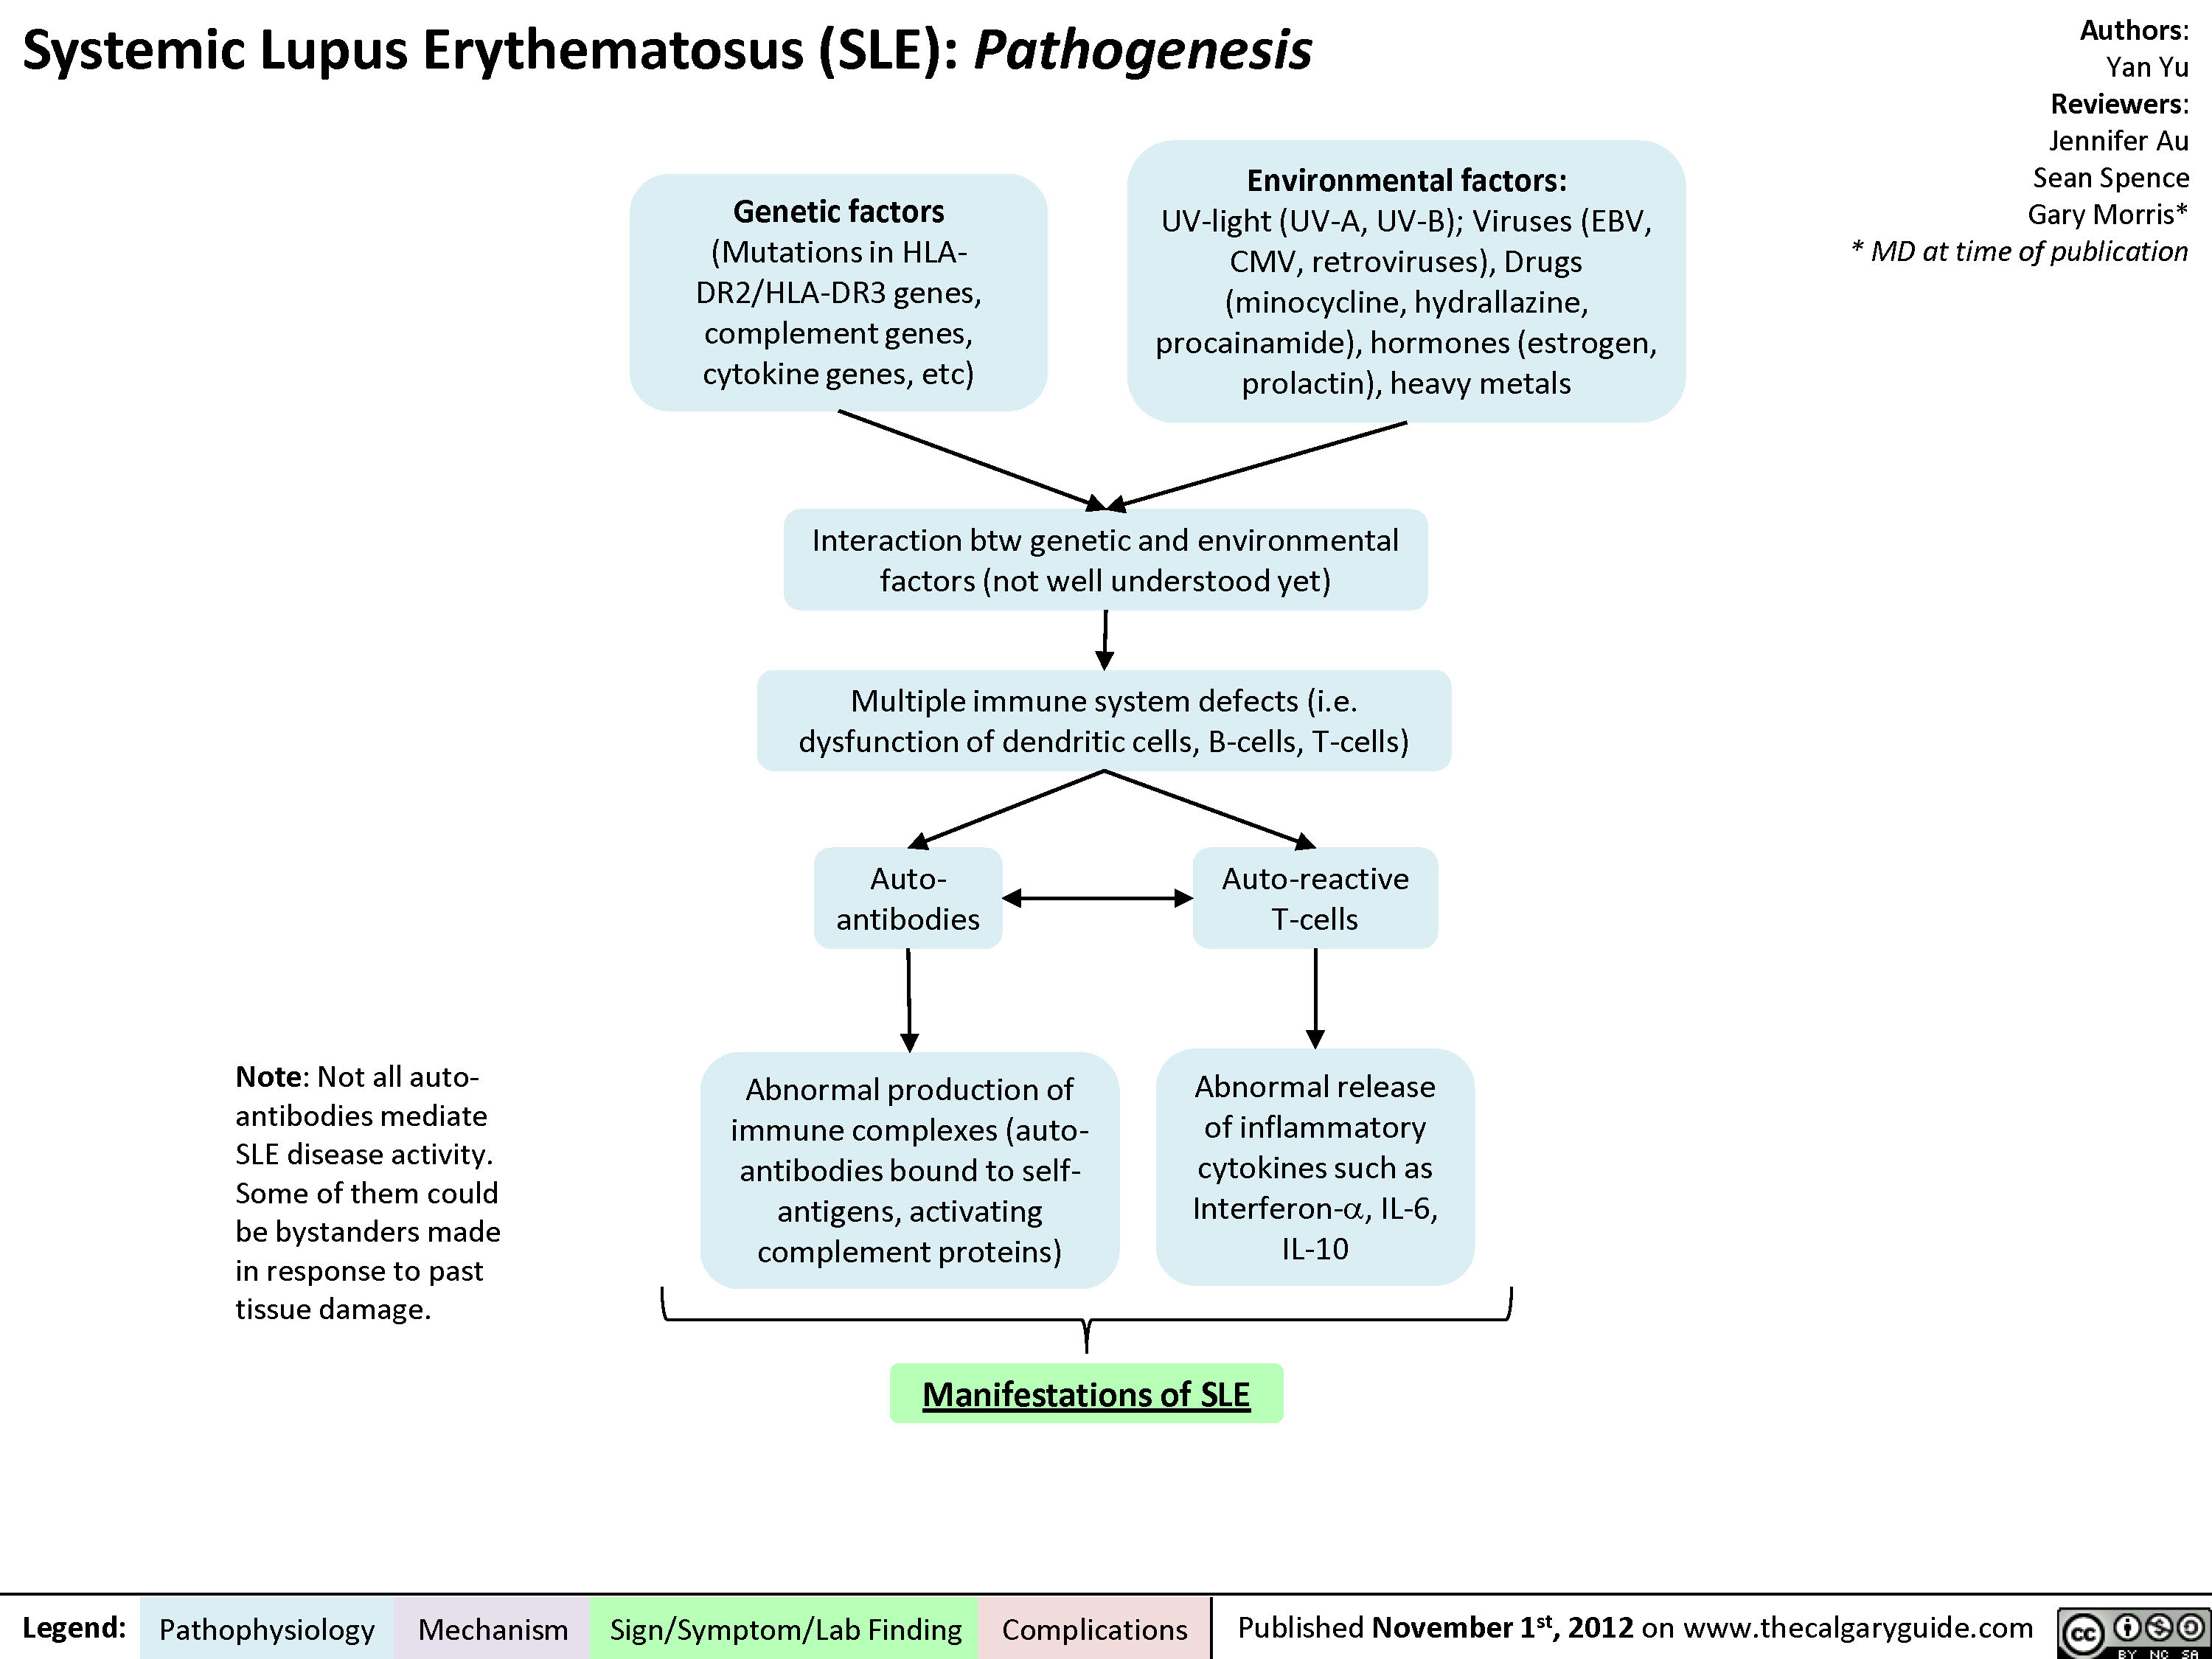 Pathogenesis of Lupus